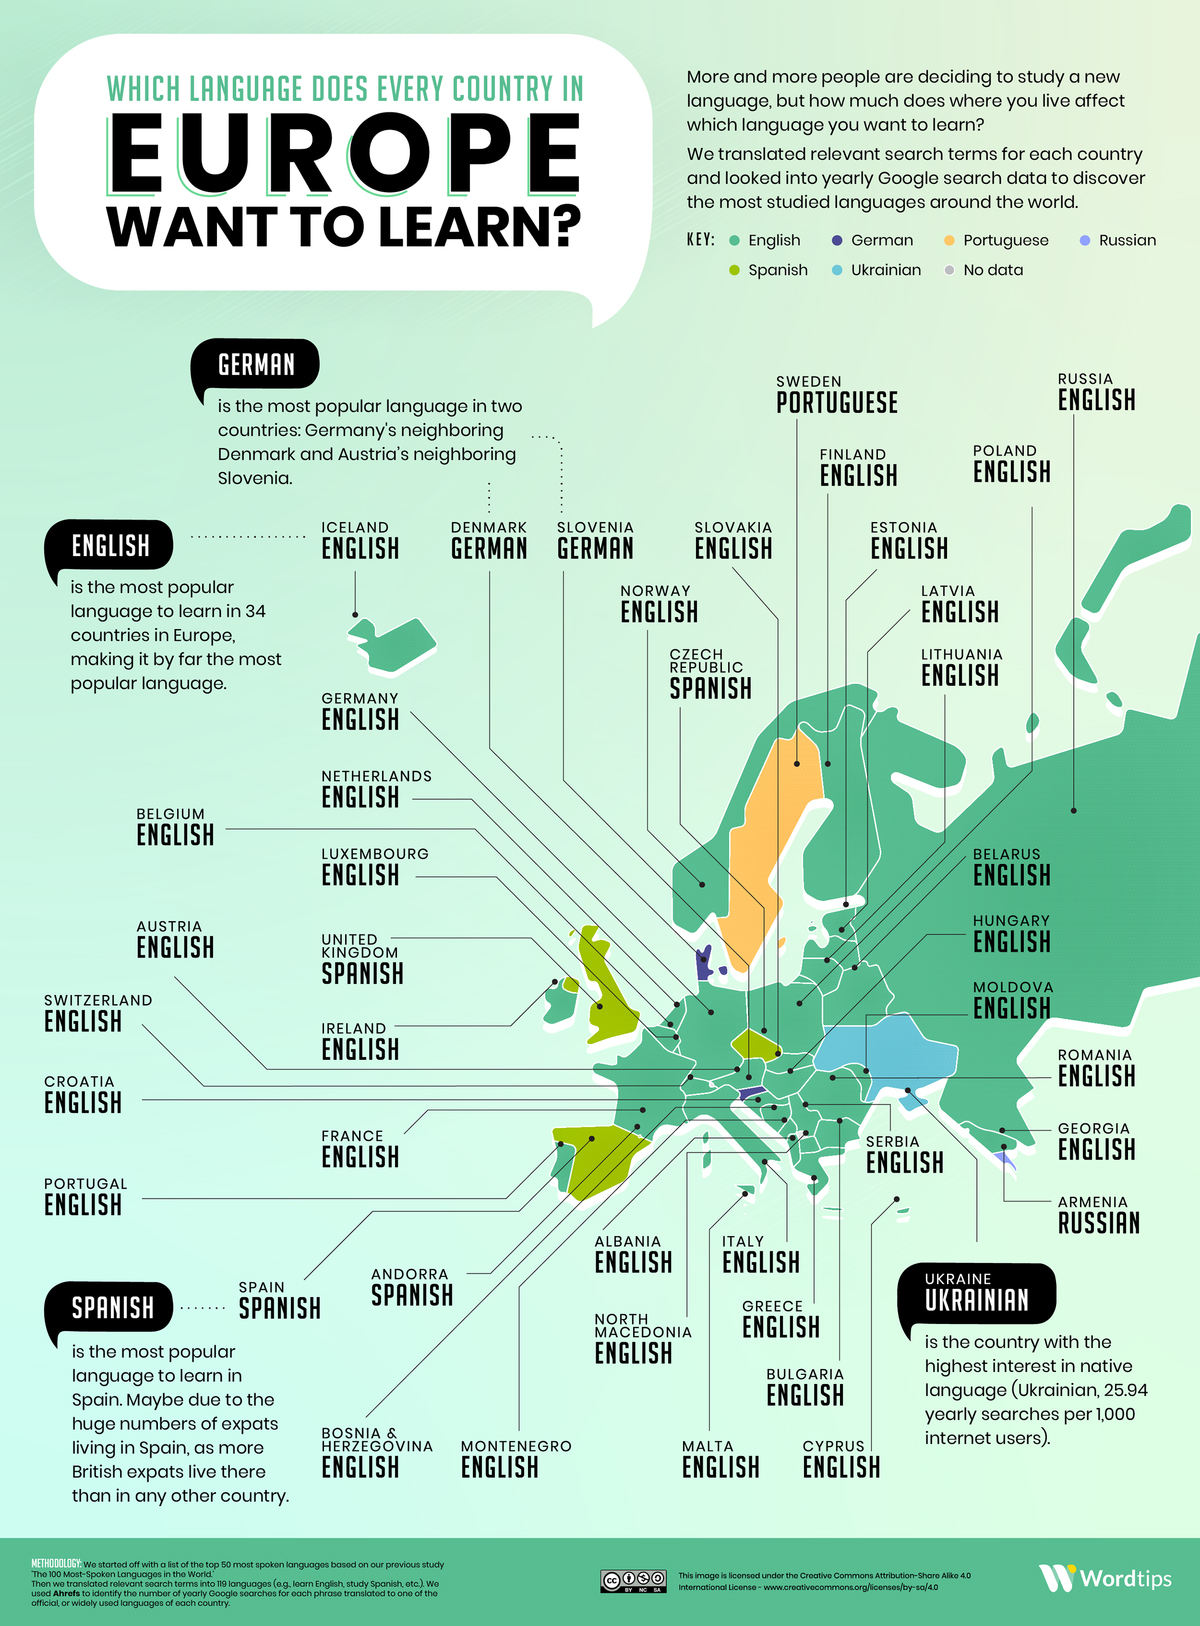 Ngôn ngữ mà các nước châu Âu muốn học nhất